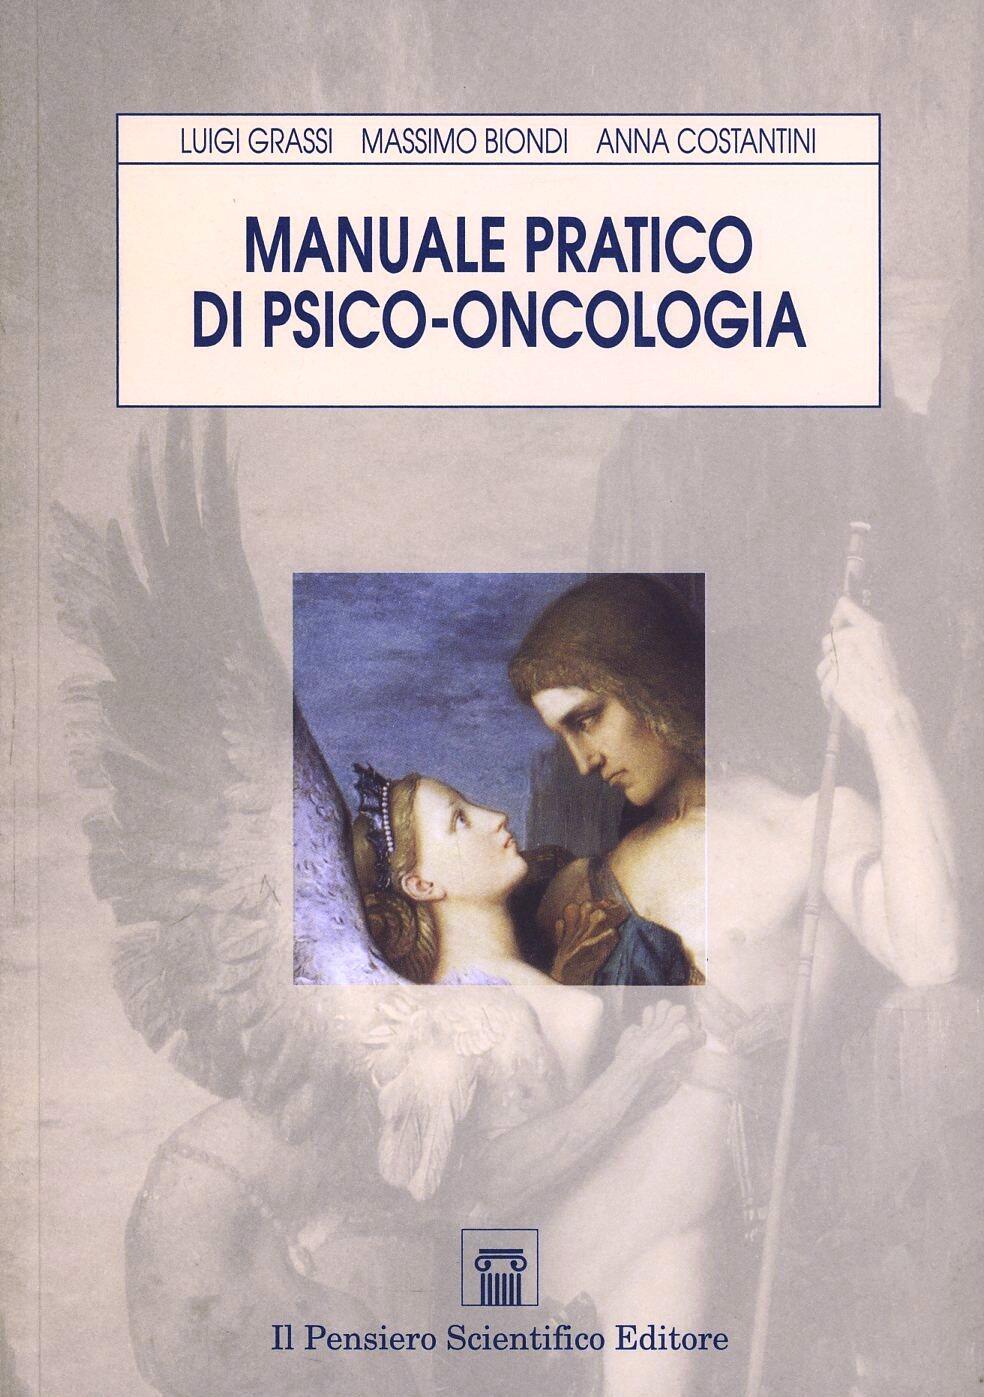 Manuale pratico di psico-oncologia, Luigi Grassi